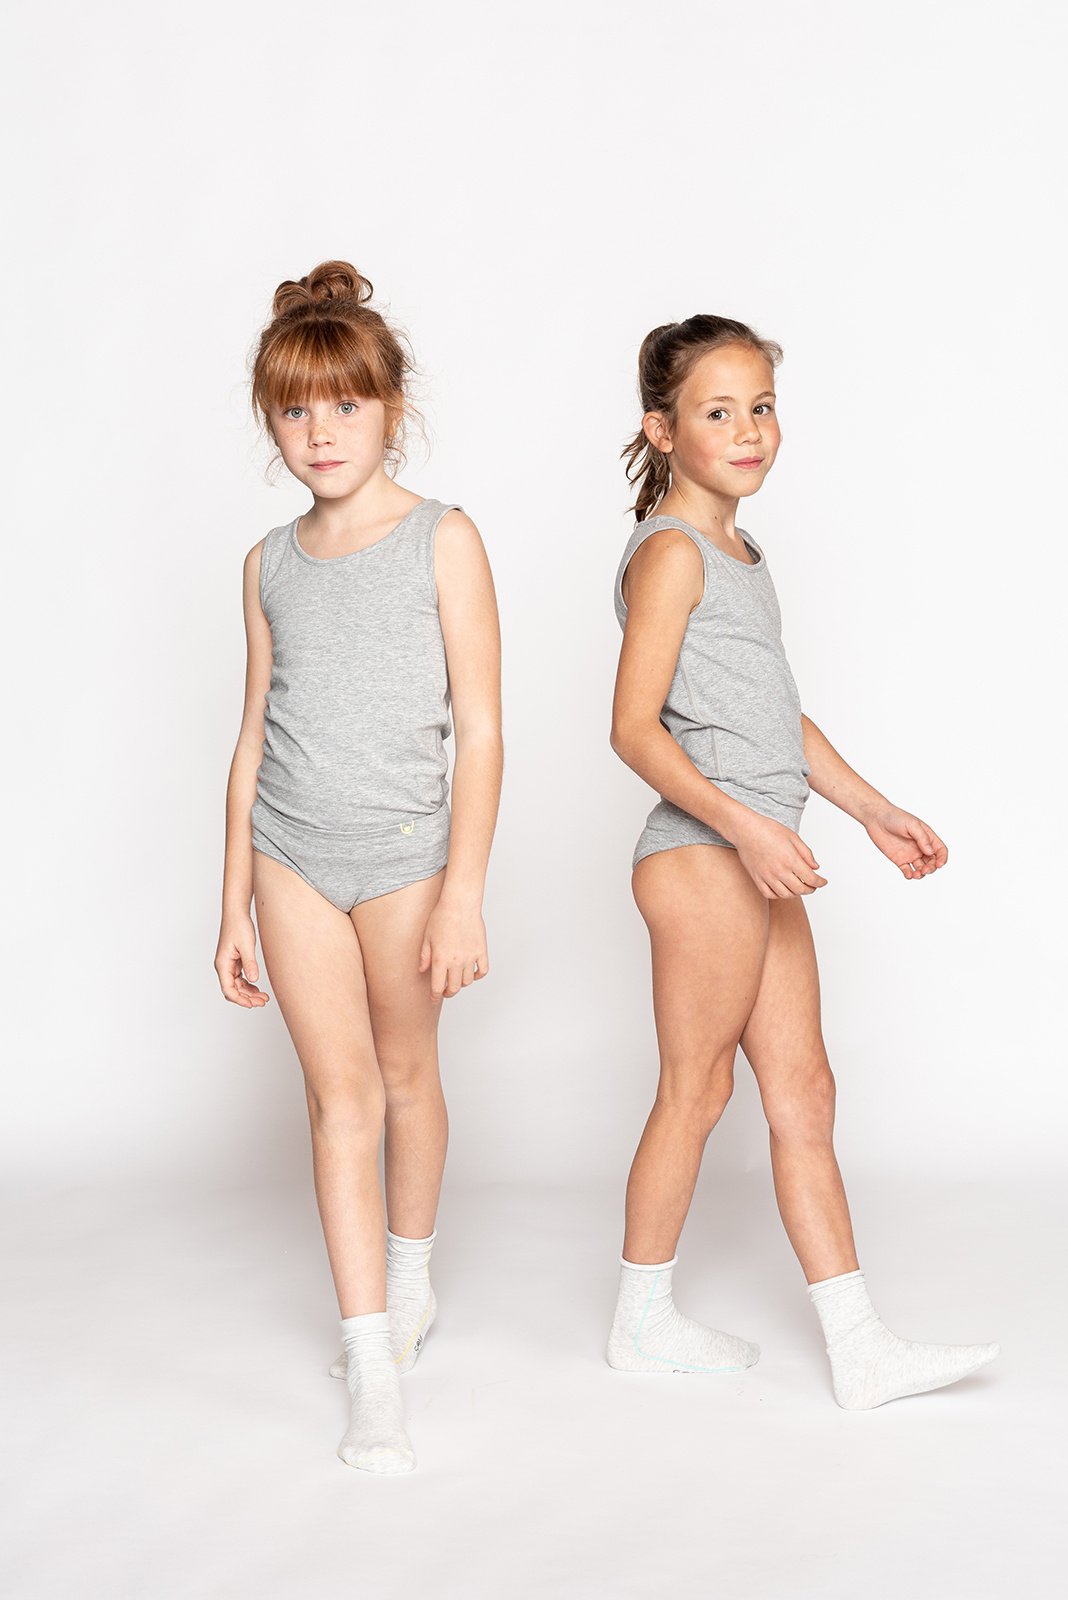 Ketyyh-chn99 Kids Underwear Girls Girls' Seamless Brief Underwear Girls  Kids Toddler Briefs Super Soft Cotton Underwear Panties (4 Pack) Green,7-8